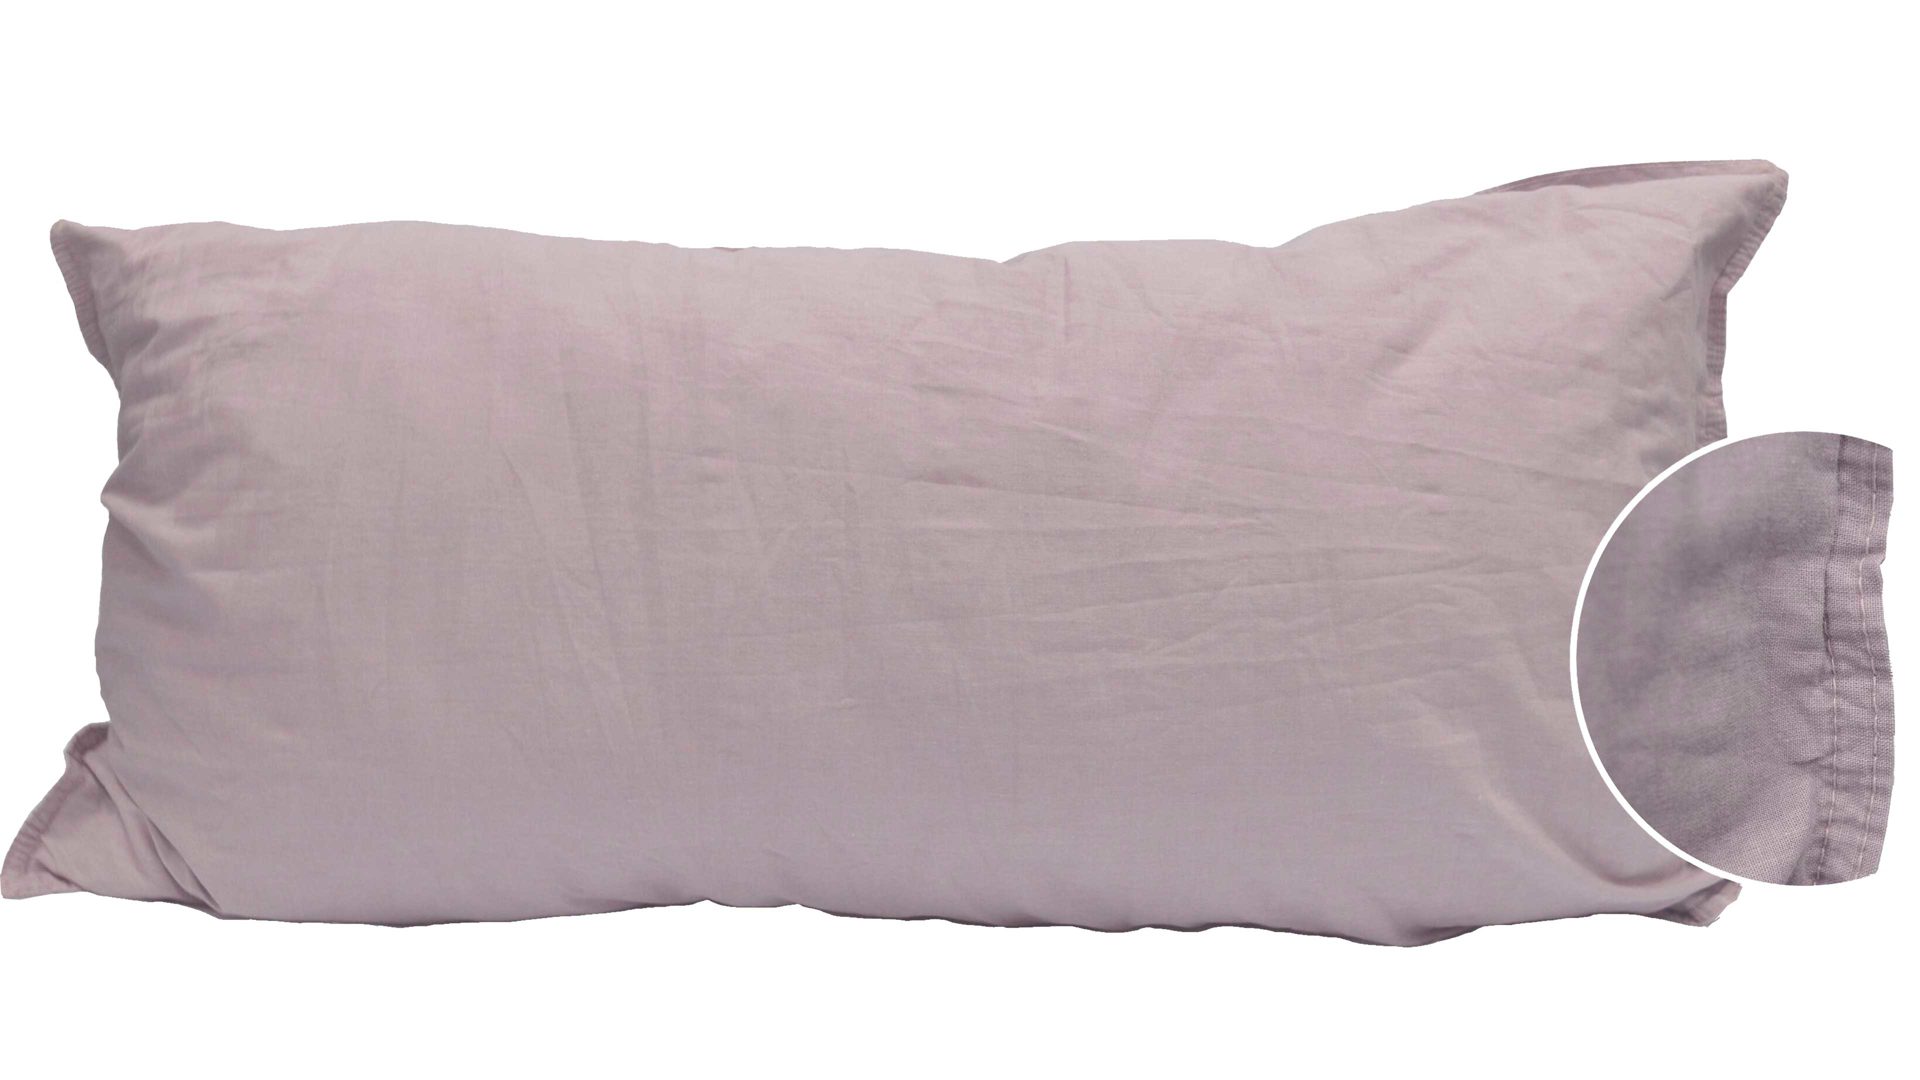 Kissenbezug /-hülle H.g. hahn haustextilien aus Stoff in Pink Kissenbezug Stone Washed altrosafarbene Baumwolle – ca. 40 x 80 cm